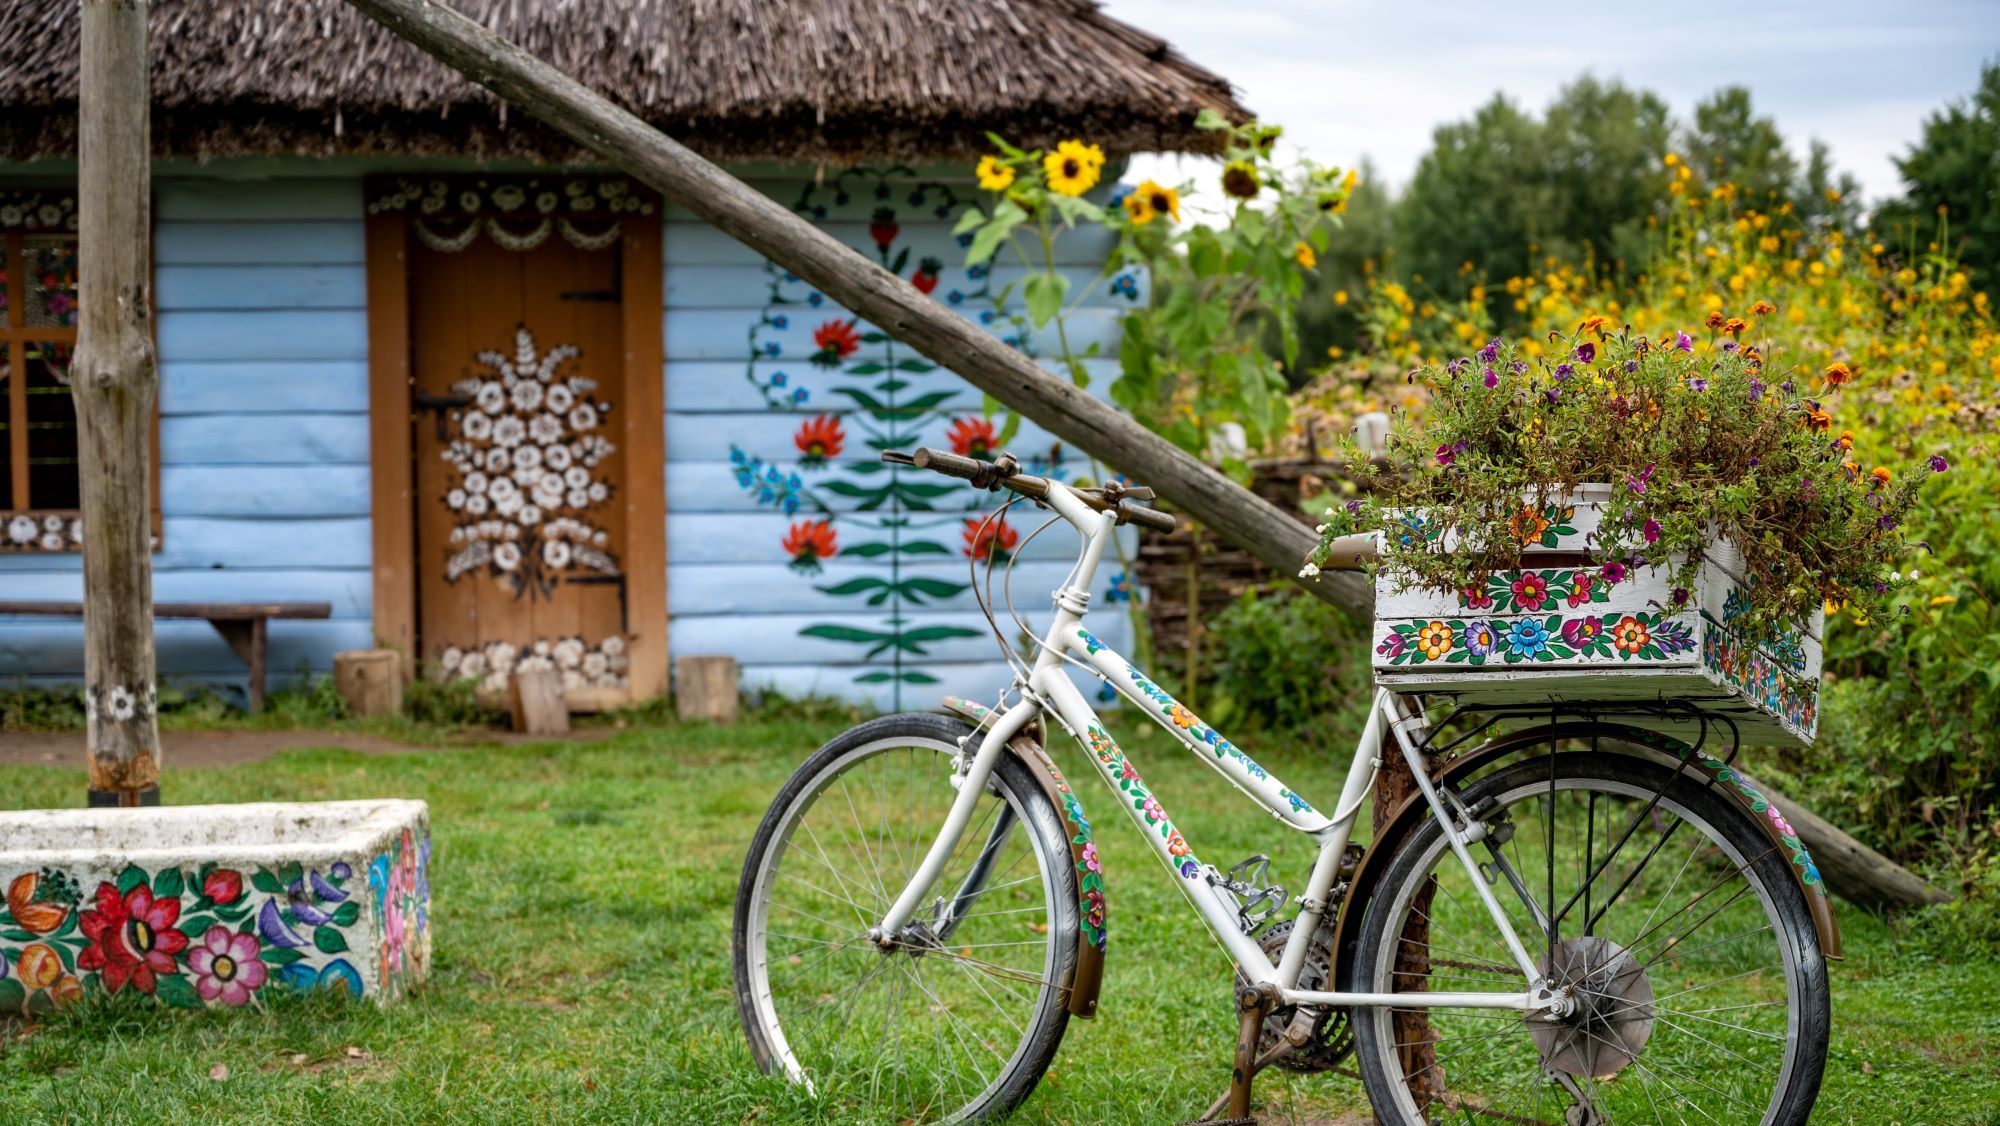 Fahrrad mit Korb mit Blümchen bemalt im Hintergrund ein blaues Haus mit Blümchen auf der Fassade